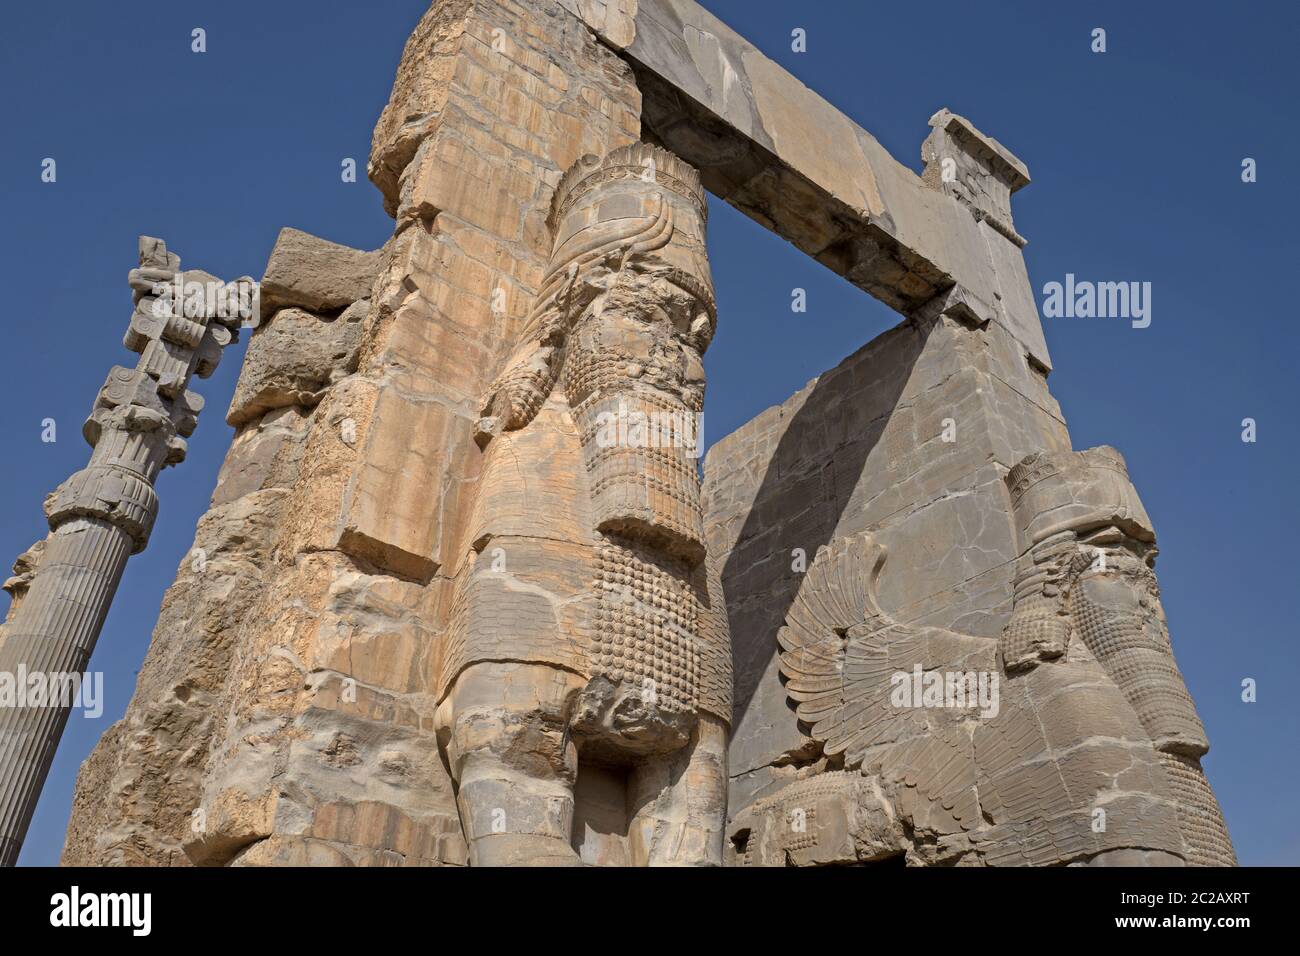 Site archéologique de l'ancienne ville persane, Persepolis, site classé au patrimoine mondial de l'UNESCO, à proximité de Shiraz, en Iran. Banque D'Images